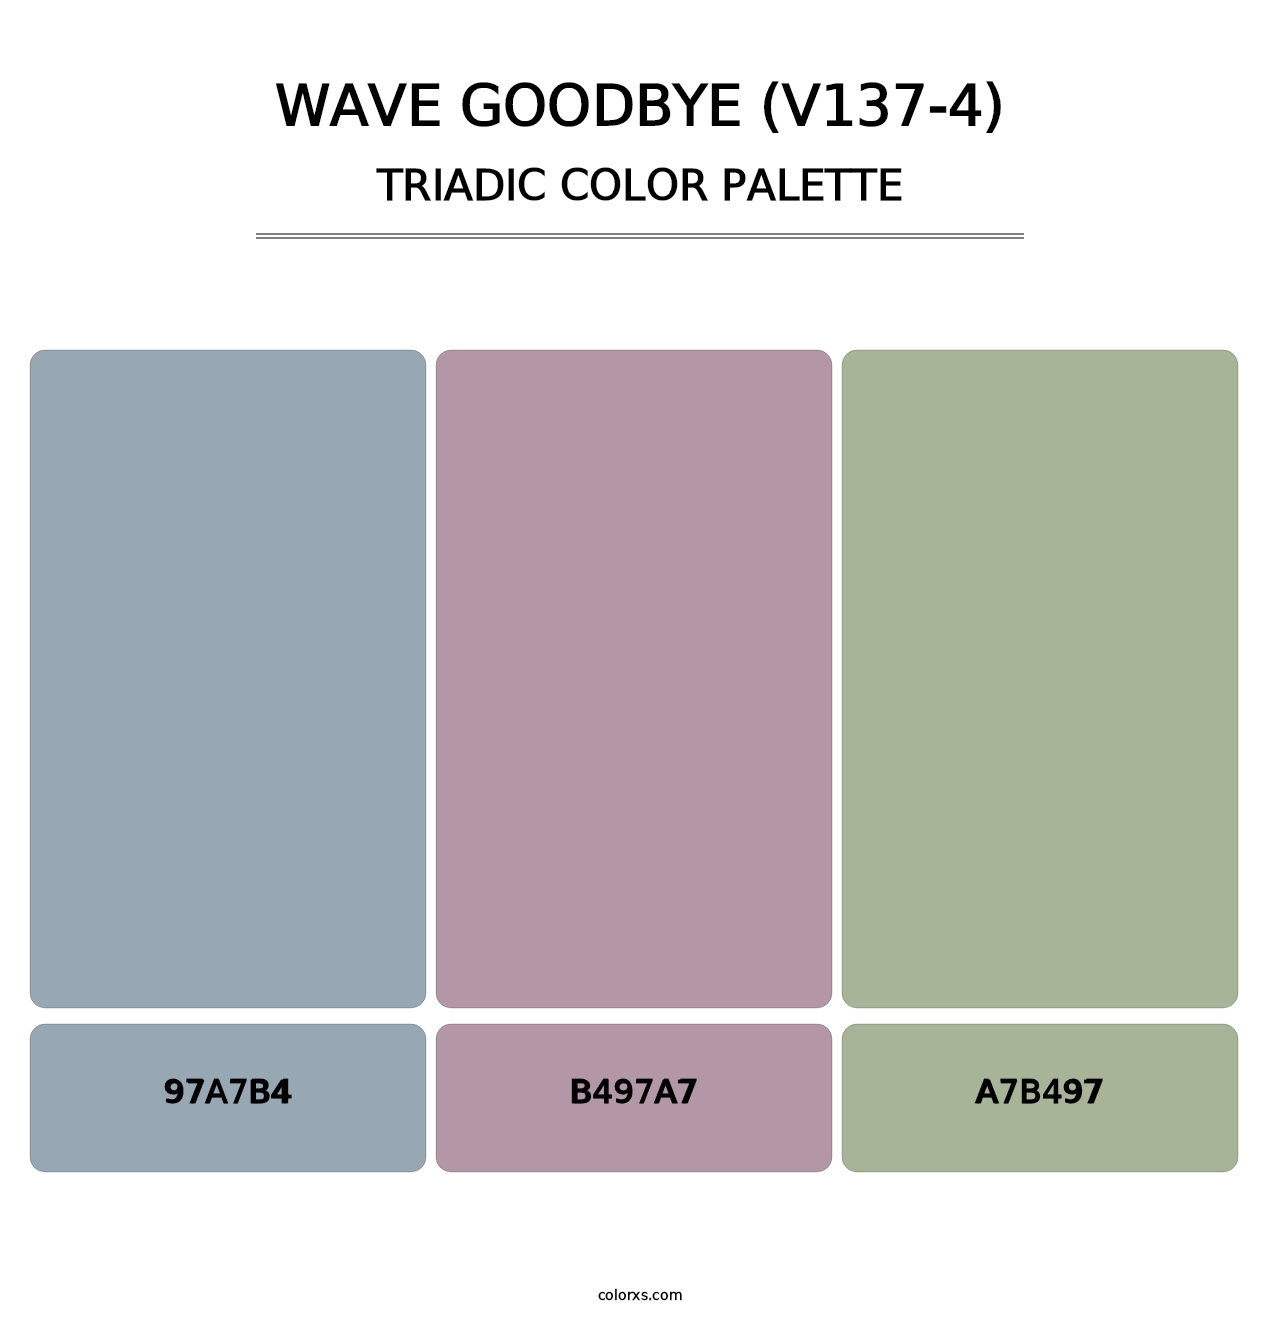 Wave Goodbye (V137-4) - Triadic Color Palette